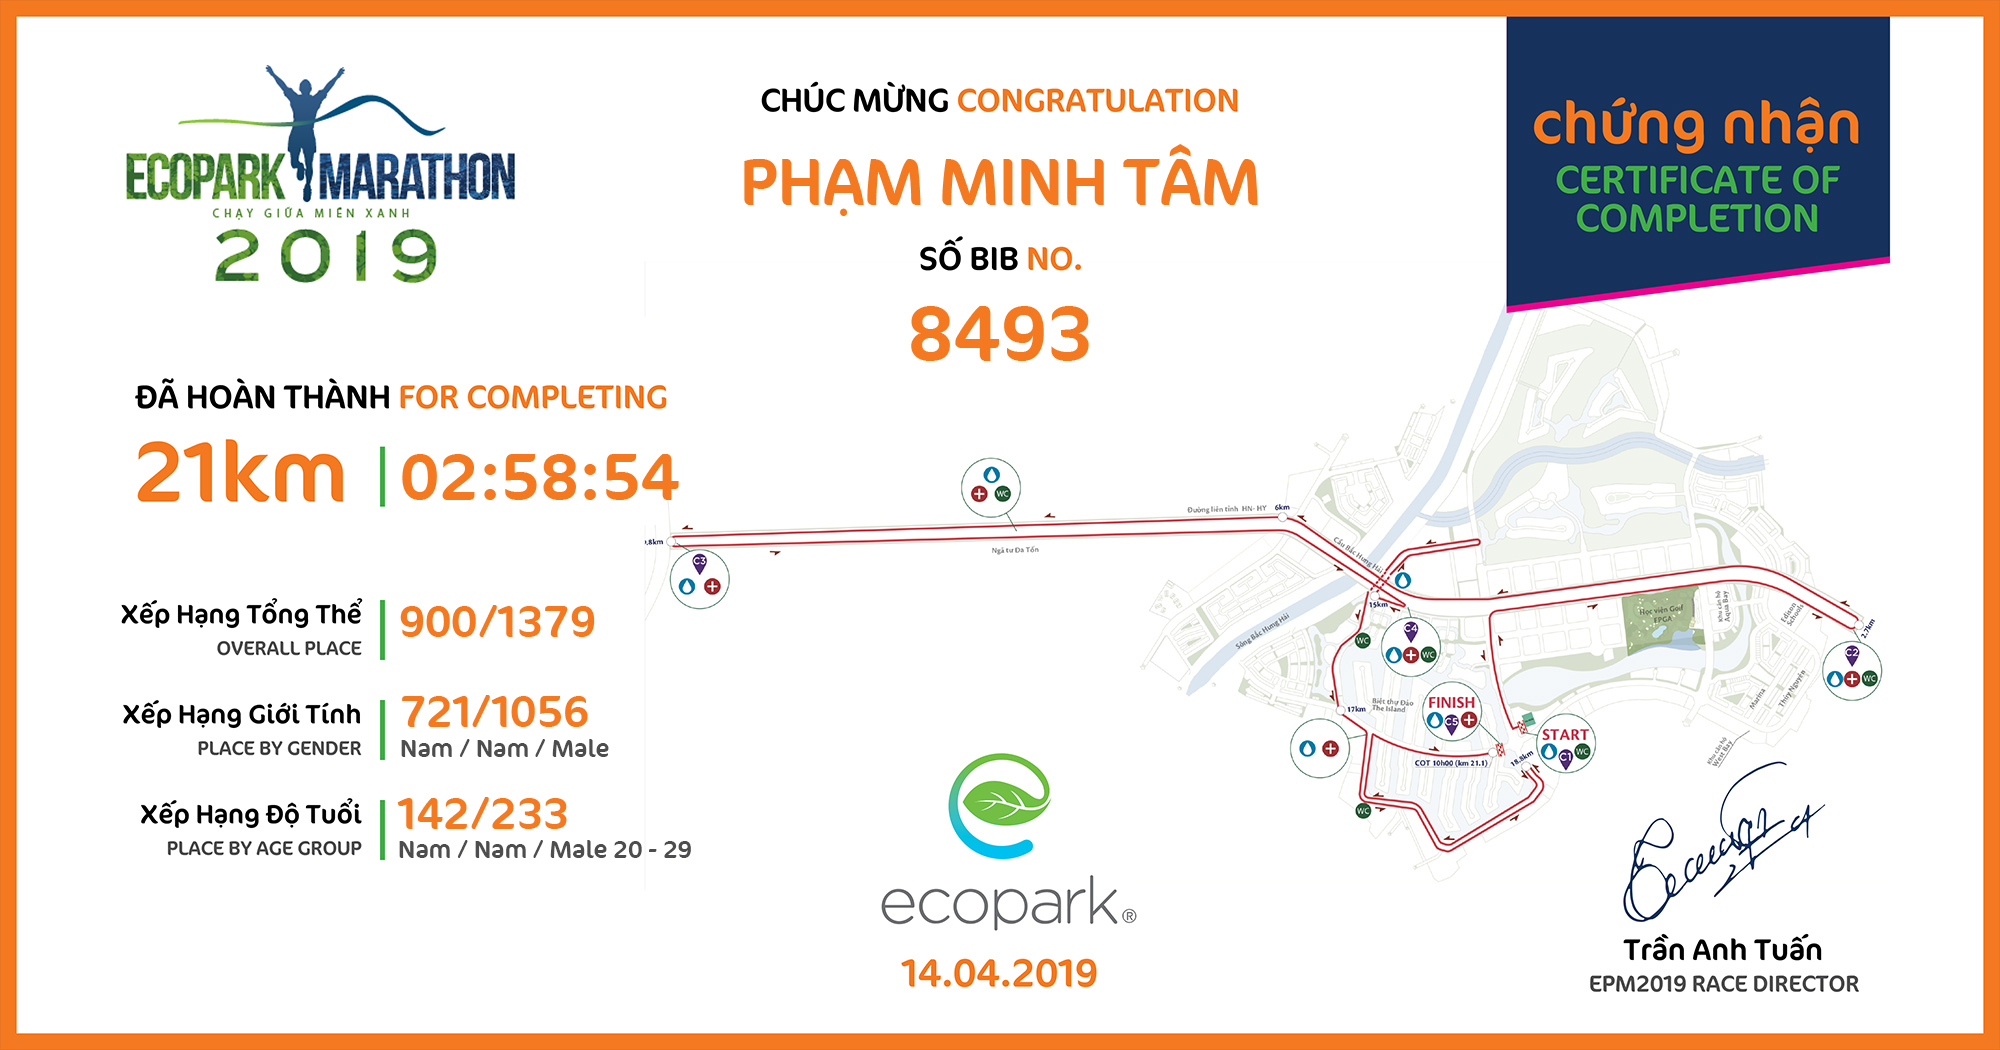 8493 - Phạm Minh Tâm